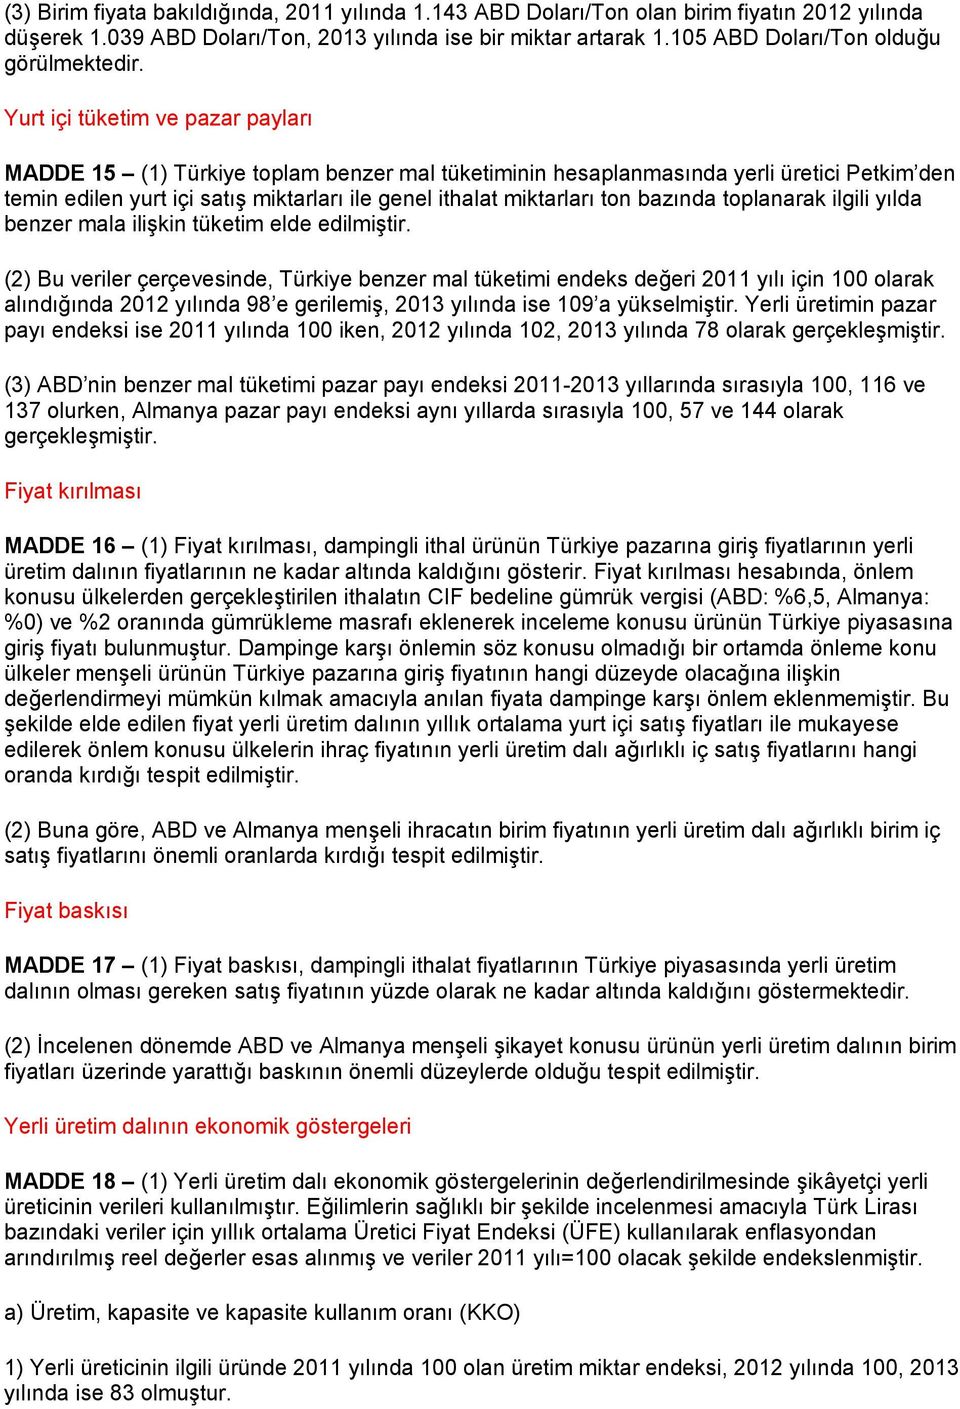 Yurt içi tüketim ve pazar payları MADDE 15 (1) Türkiye toplam benzer mal tüketiminin hesaplanmasında yerli üretici Petkim den temin edilen yurt içi satış miktarları ile genel ithalat miktarları ton